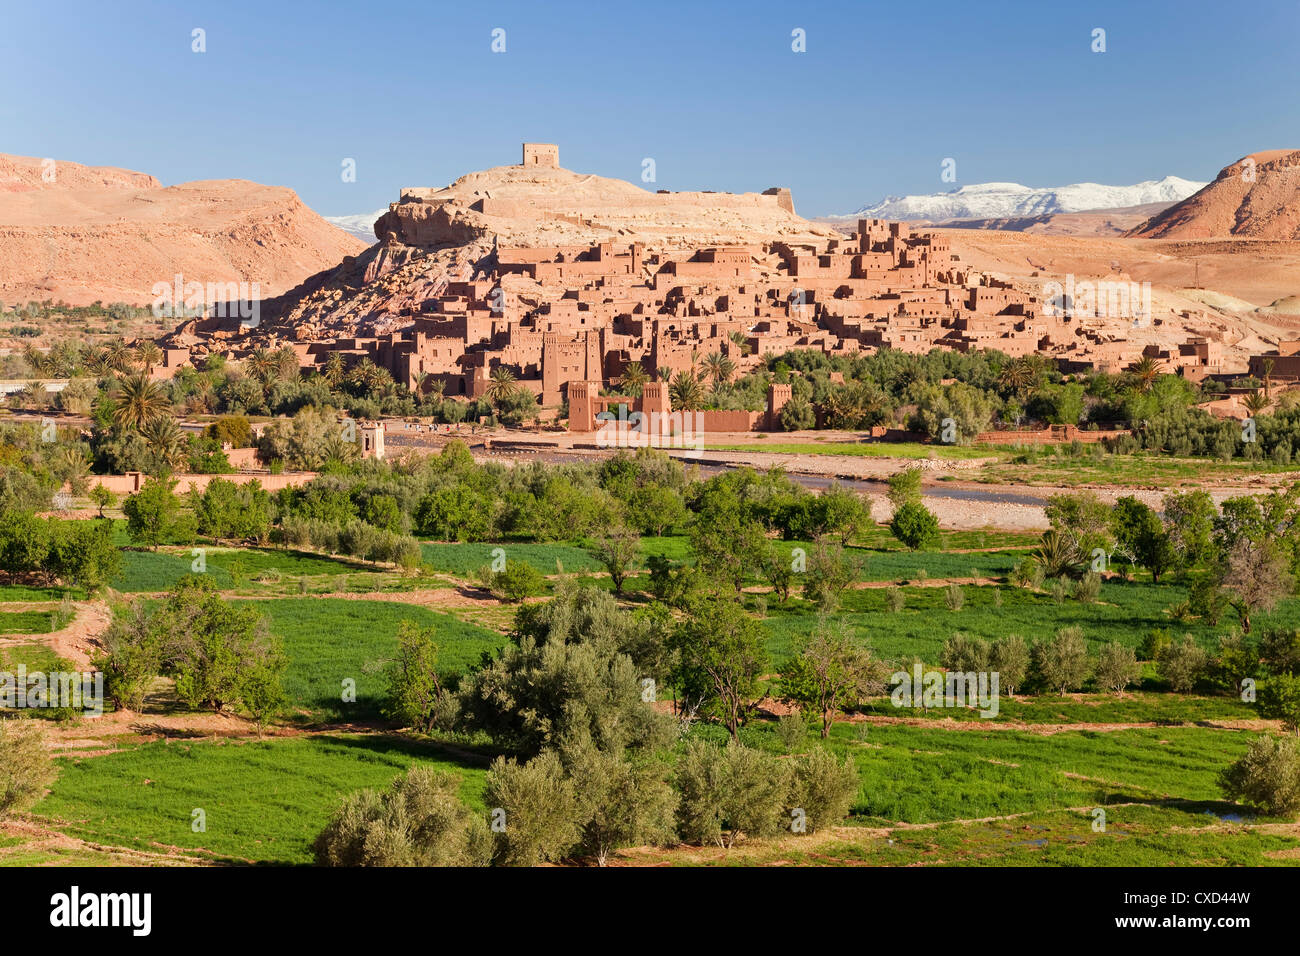 Ciudad de Ait Benhaddou en una antigua ruta de caravanas junto al río Ouarzazate, a menudo utilizada como un film location, Marruecos Foto de stock